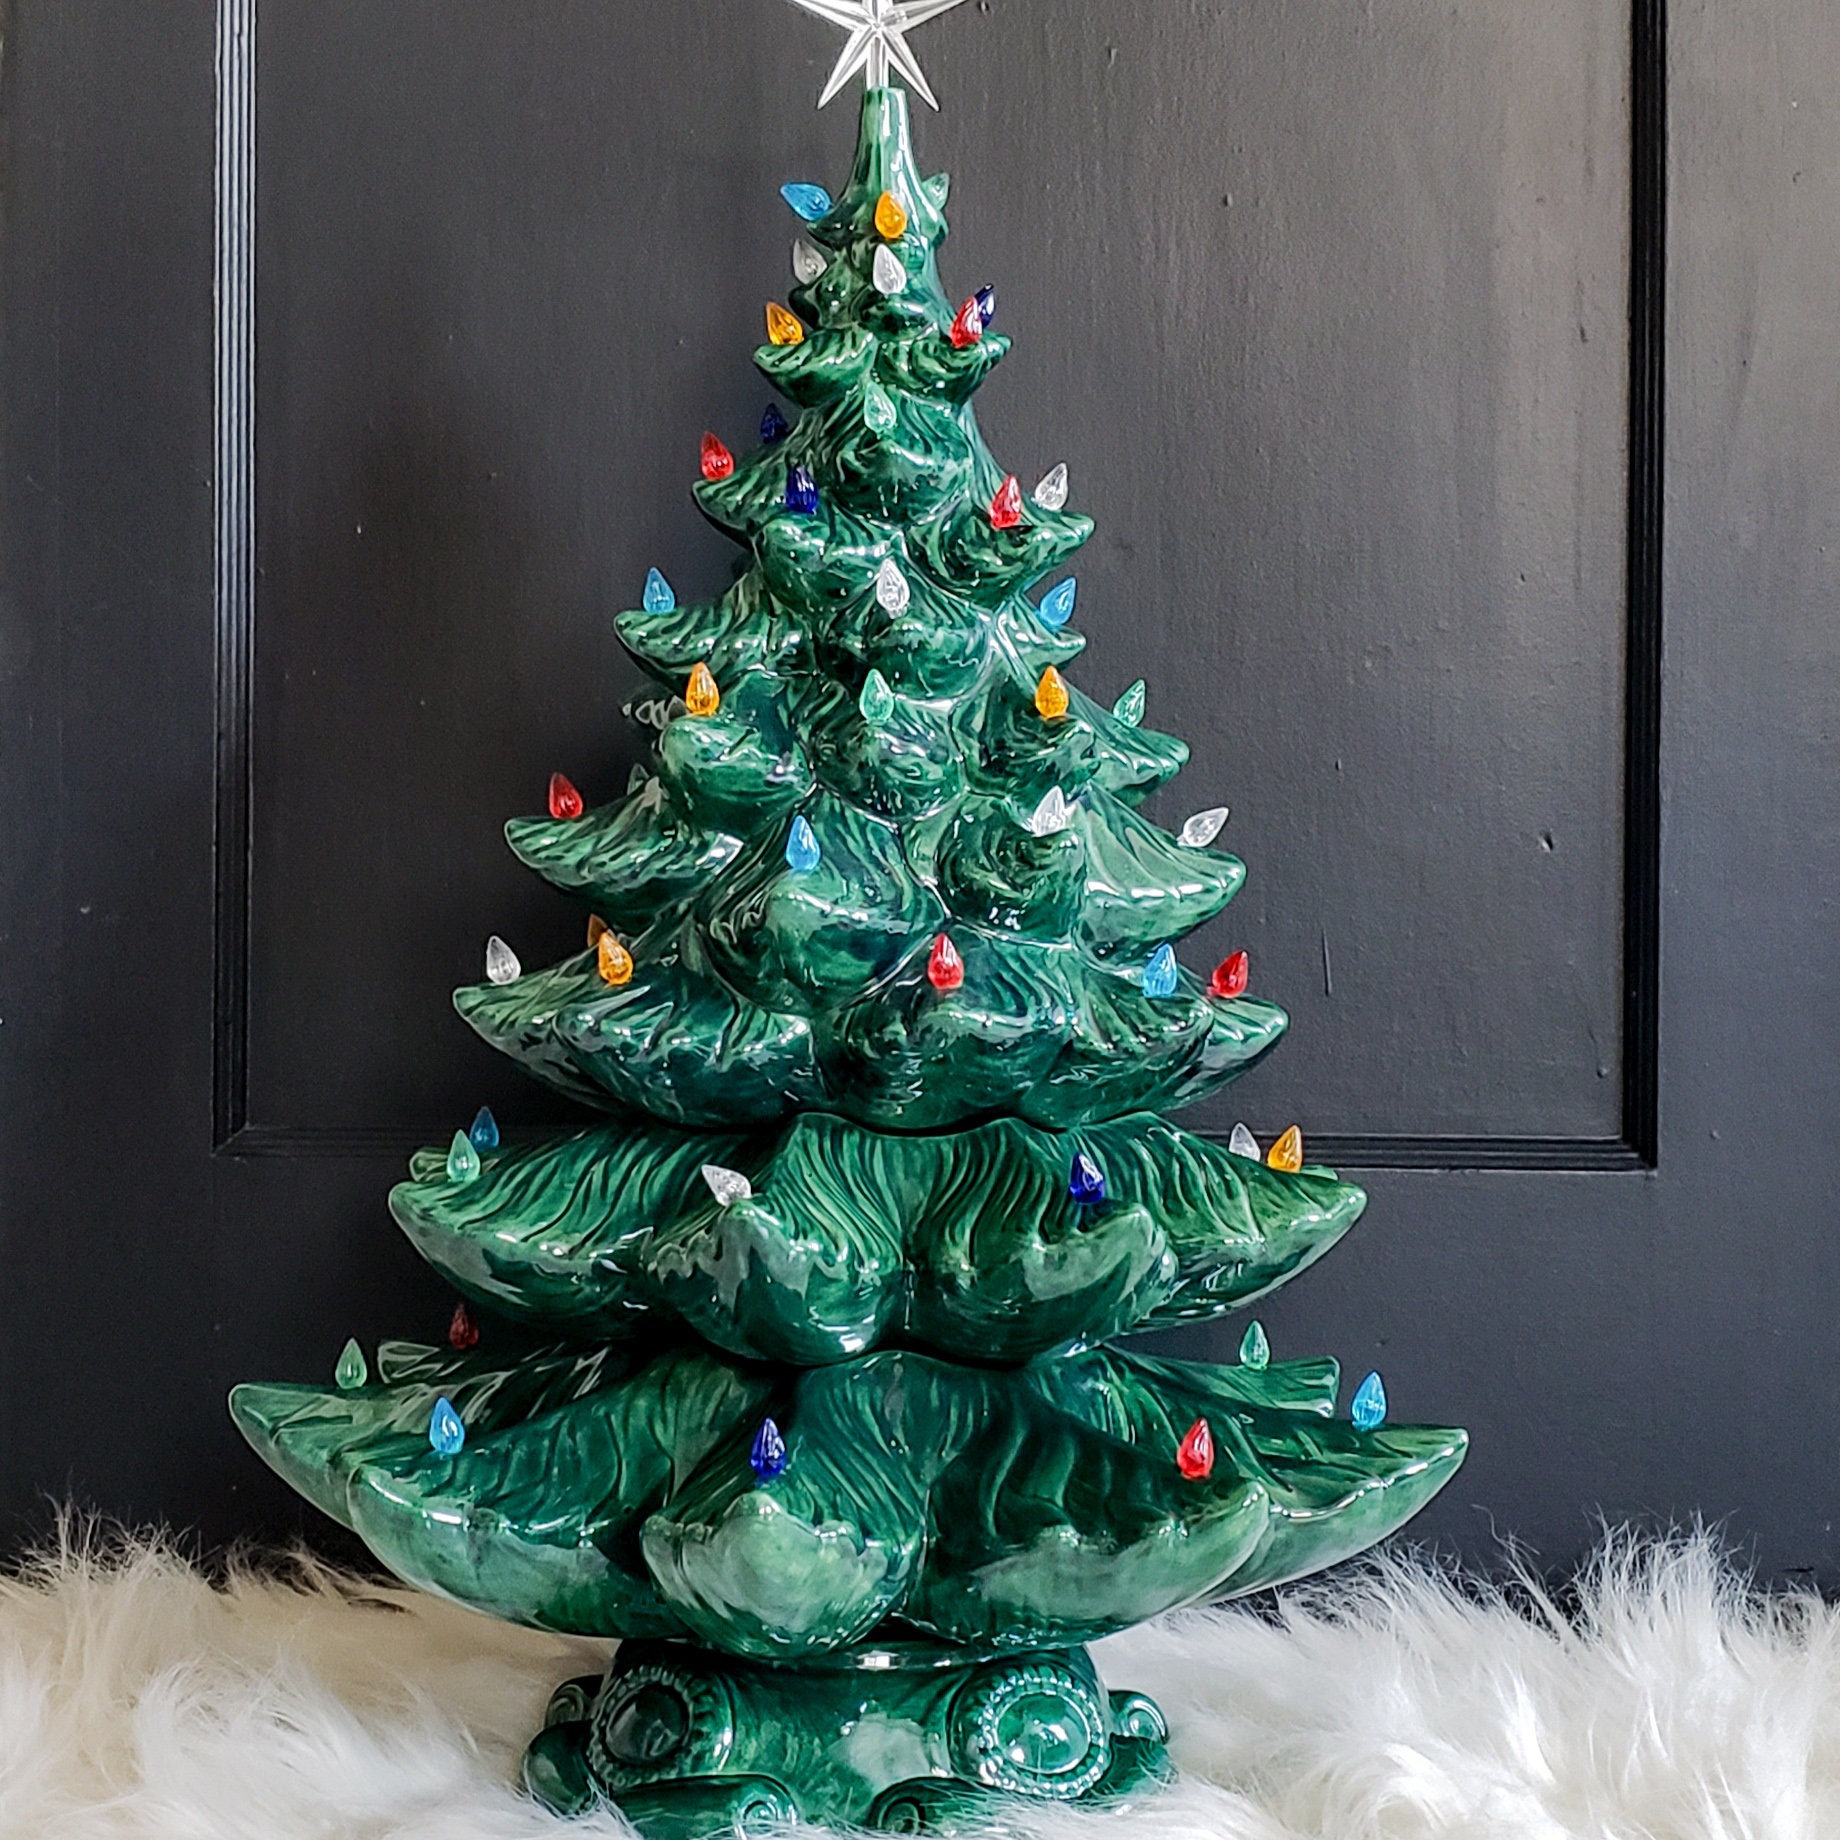 Where To Buy Ceramic Christmas Tree?